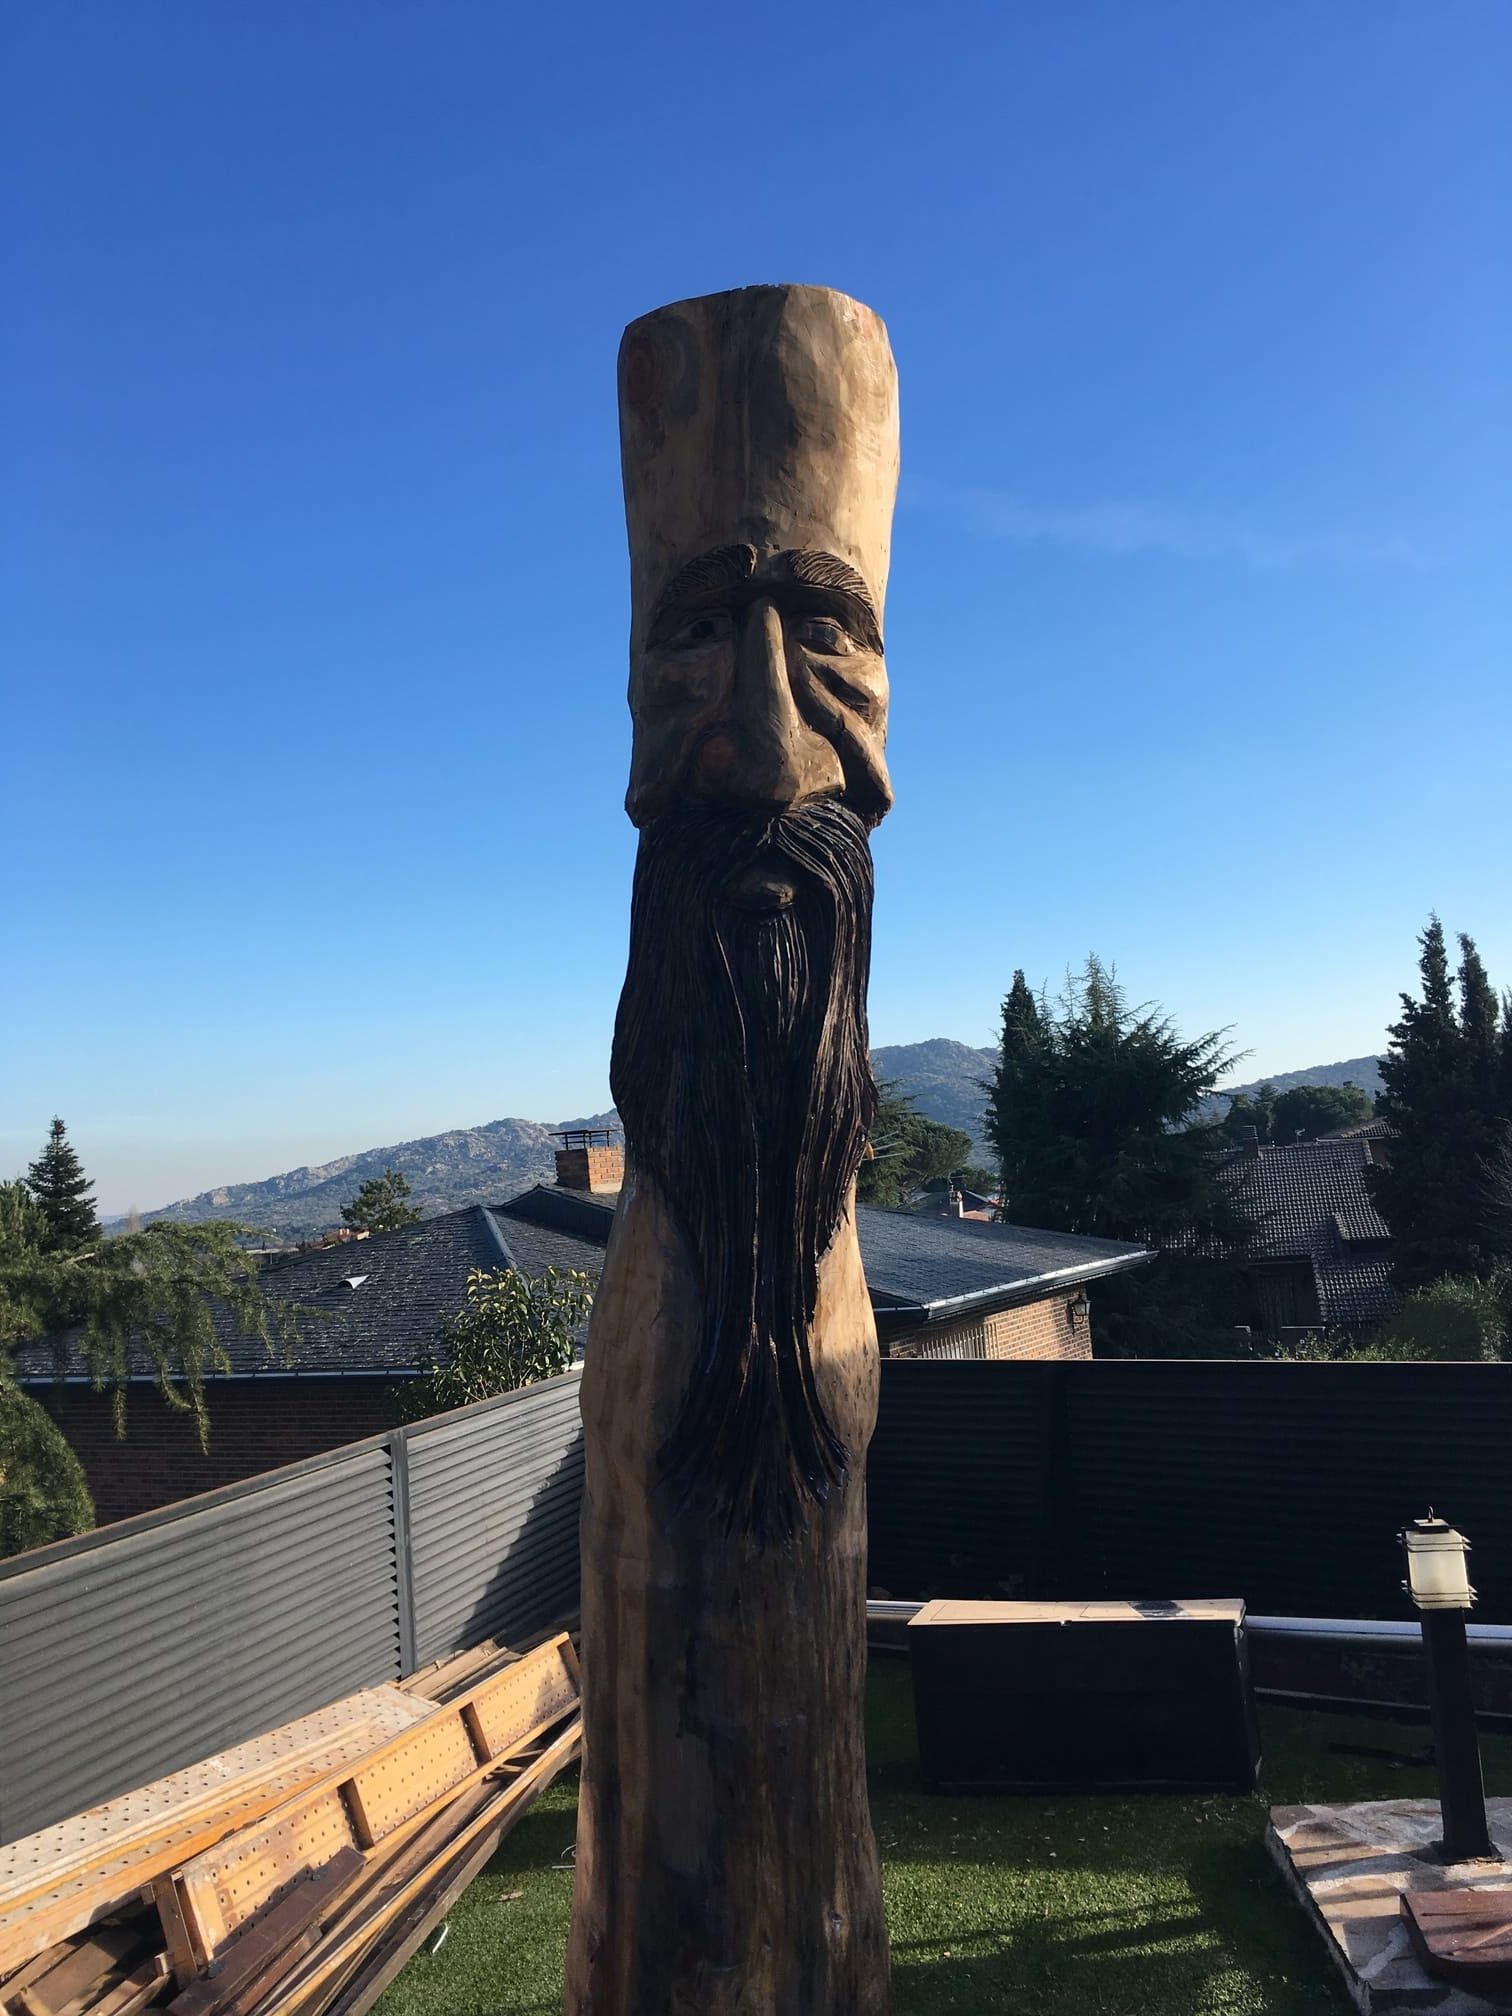 Escultura de madera de un espíritu del bosque, tallada con encanto y magia